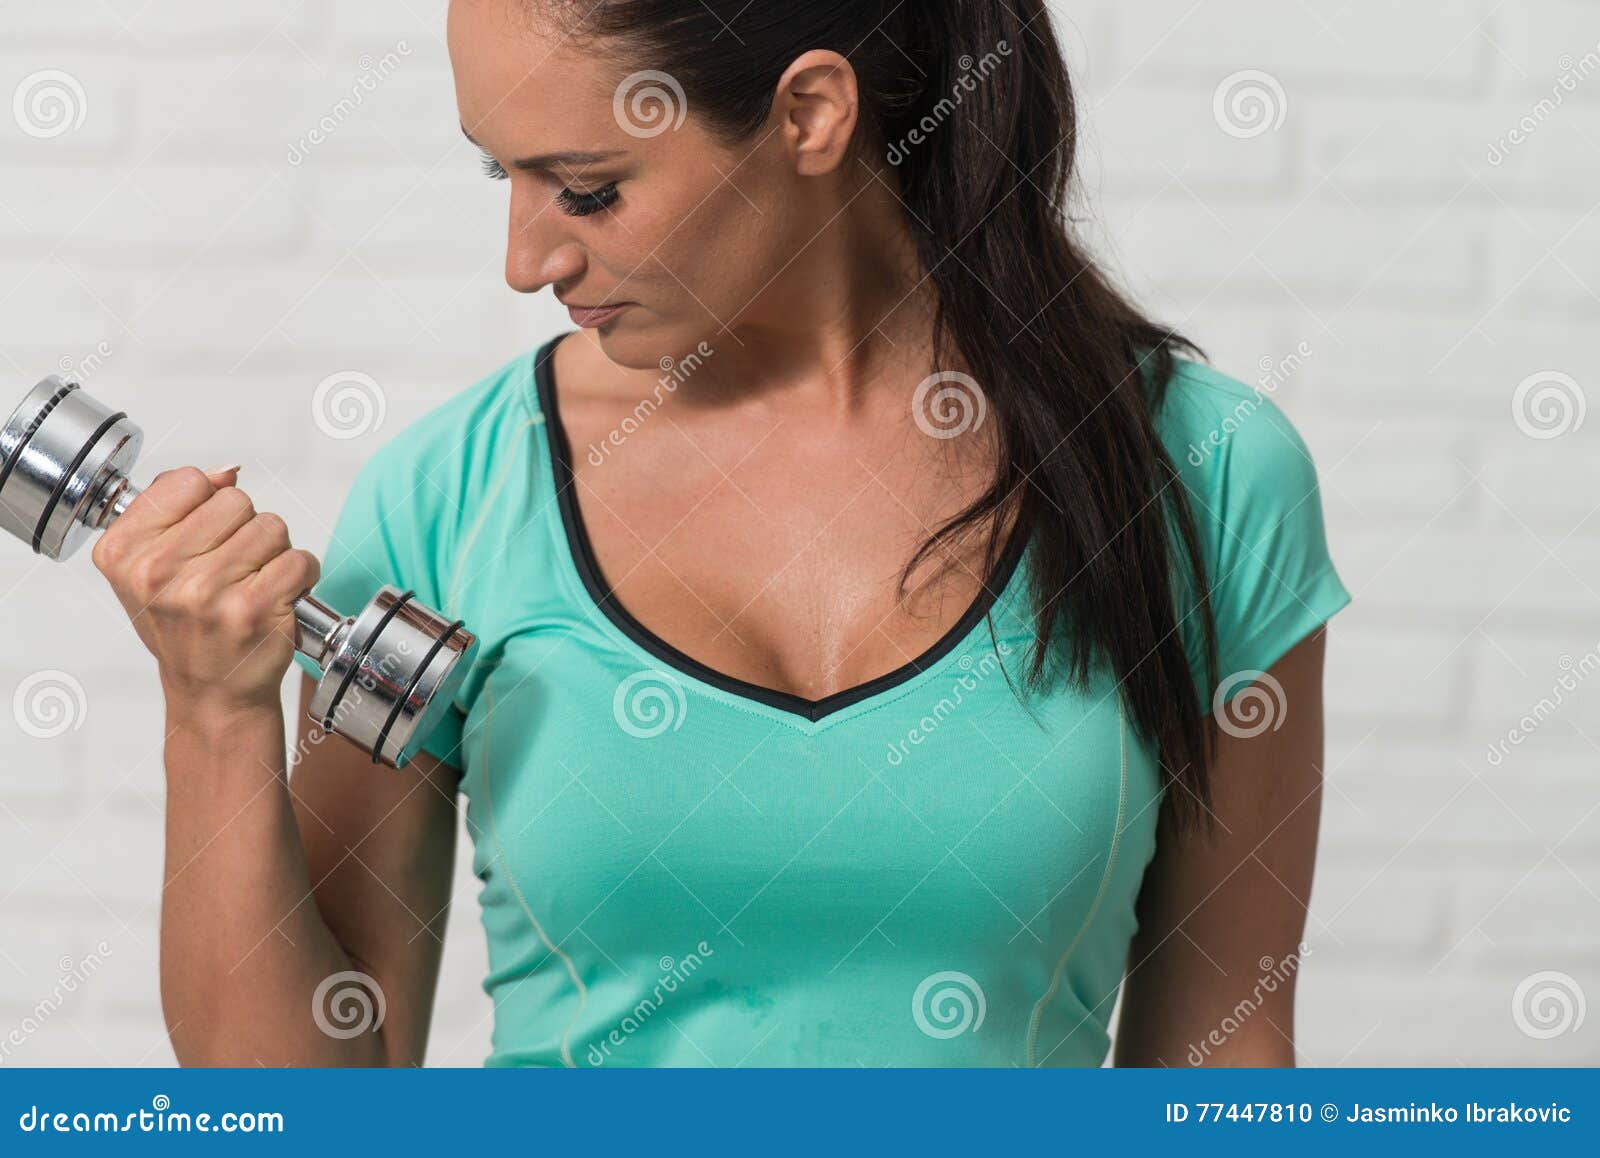 女性健美运动员用哑铃训练二头肌。图片-商业图片-正版原创图片下载购买-VEER图片库